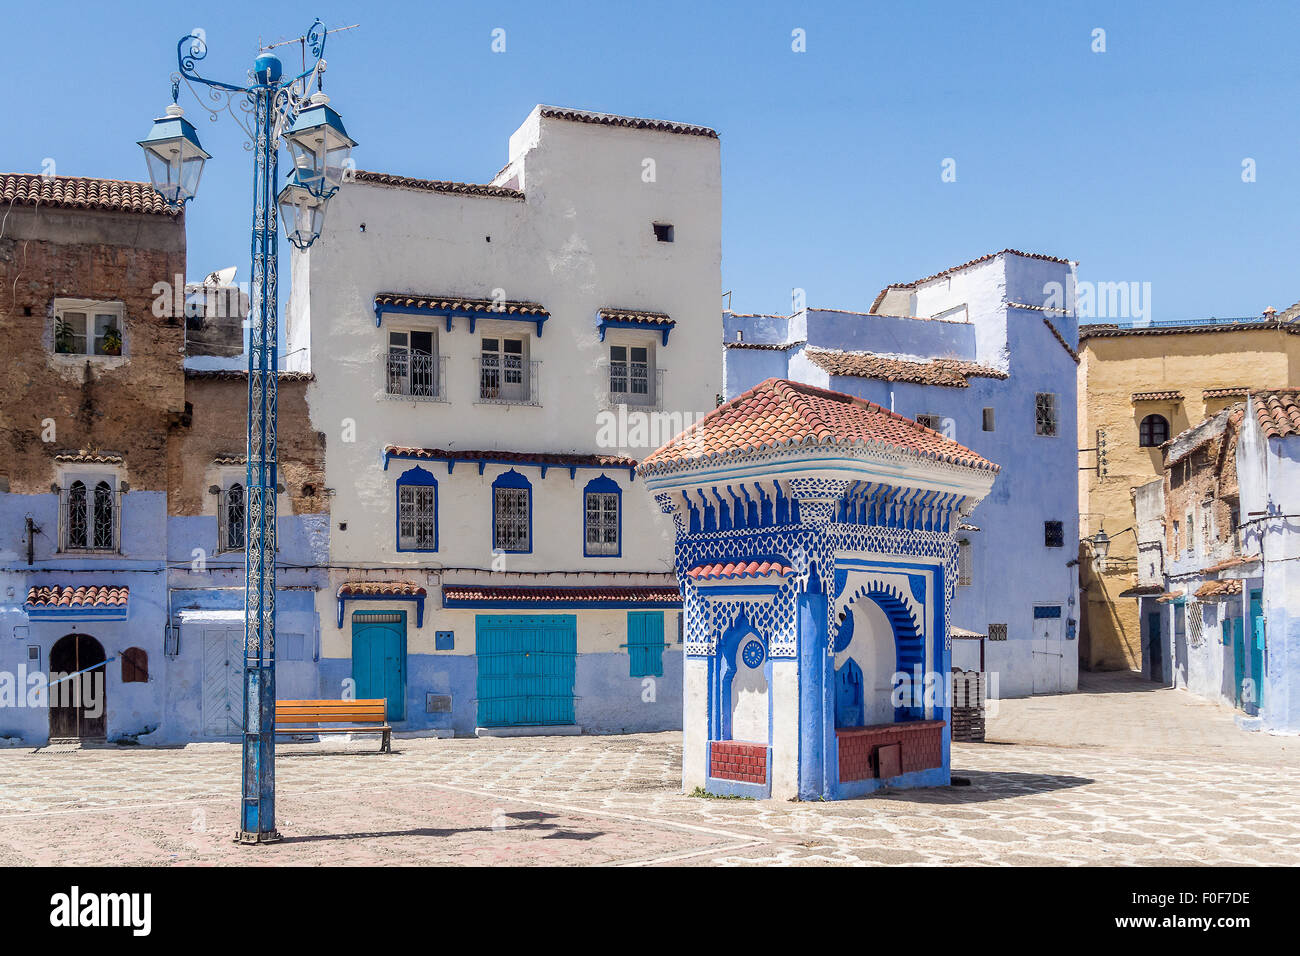 La fontaine de la Plaza El Hauta, carrés dans médina de Chefchaouen, au nord du Maroc Banque D'Images